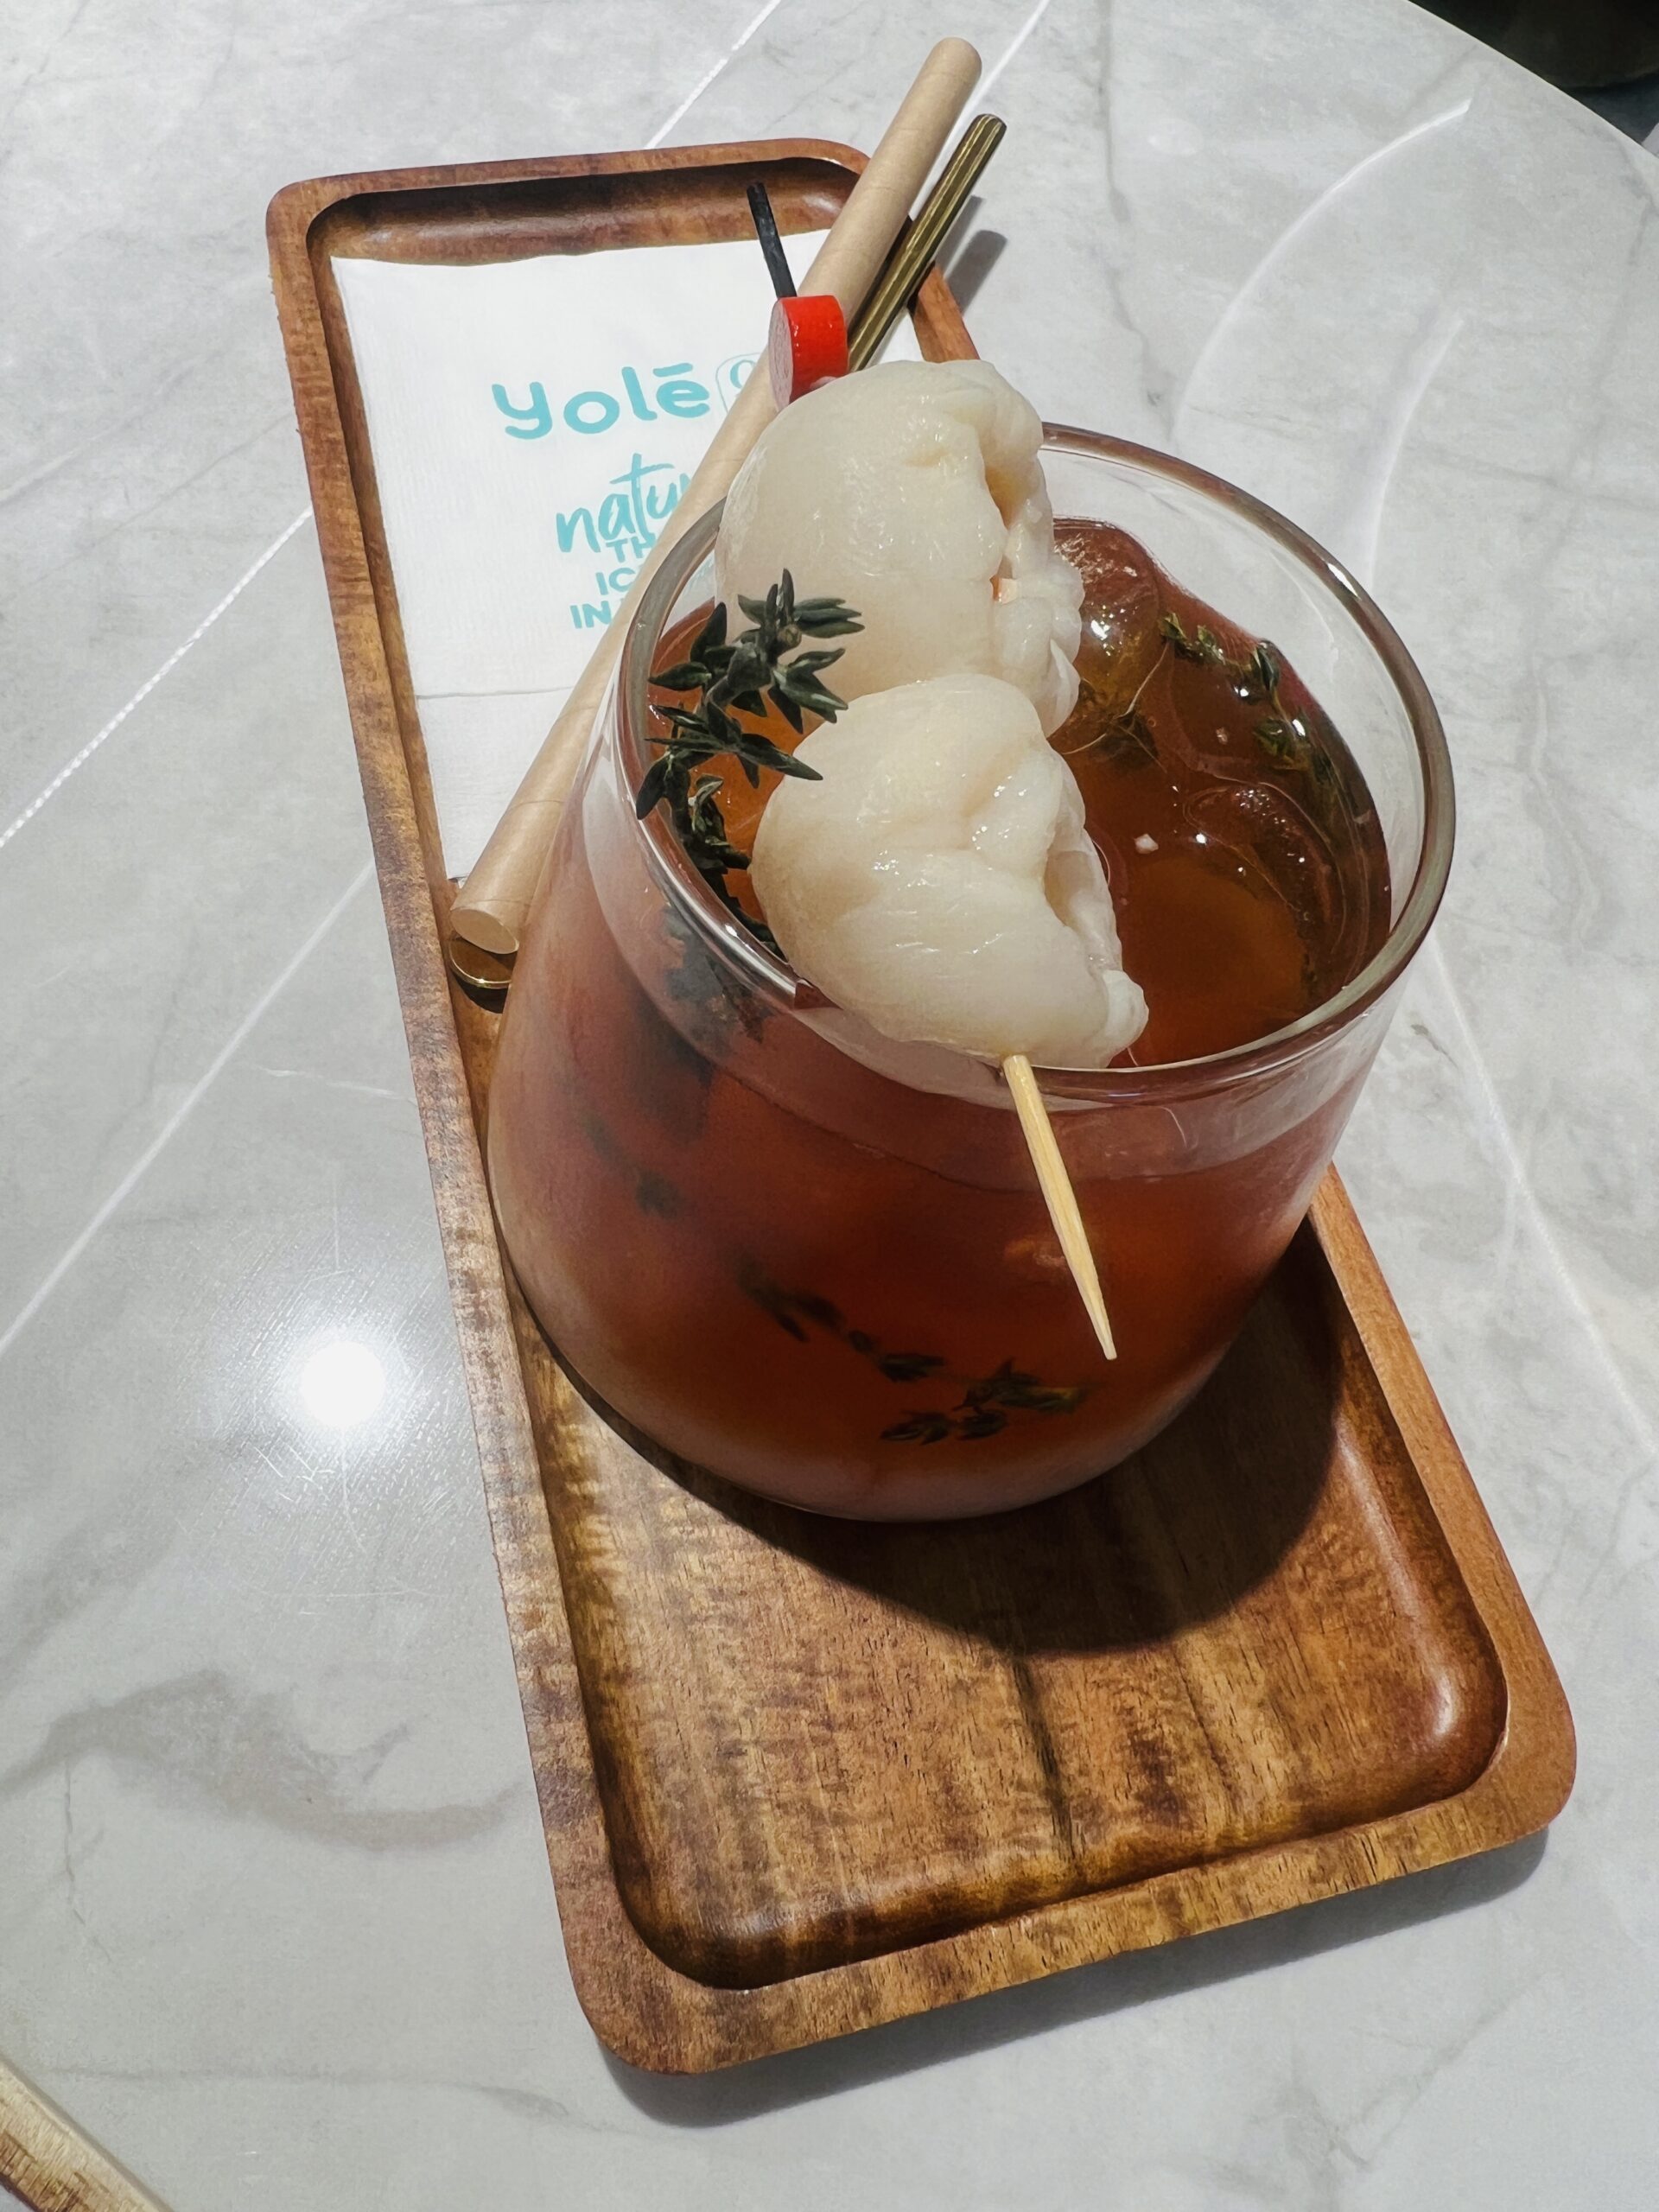 Yole Cafe - Lychee Iced Tea